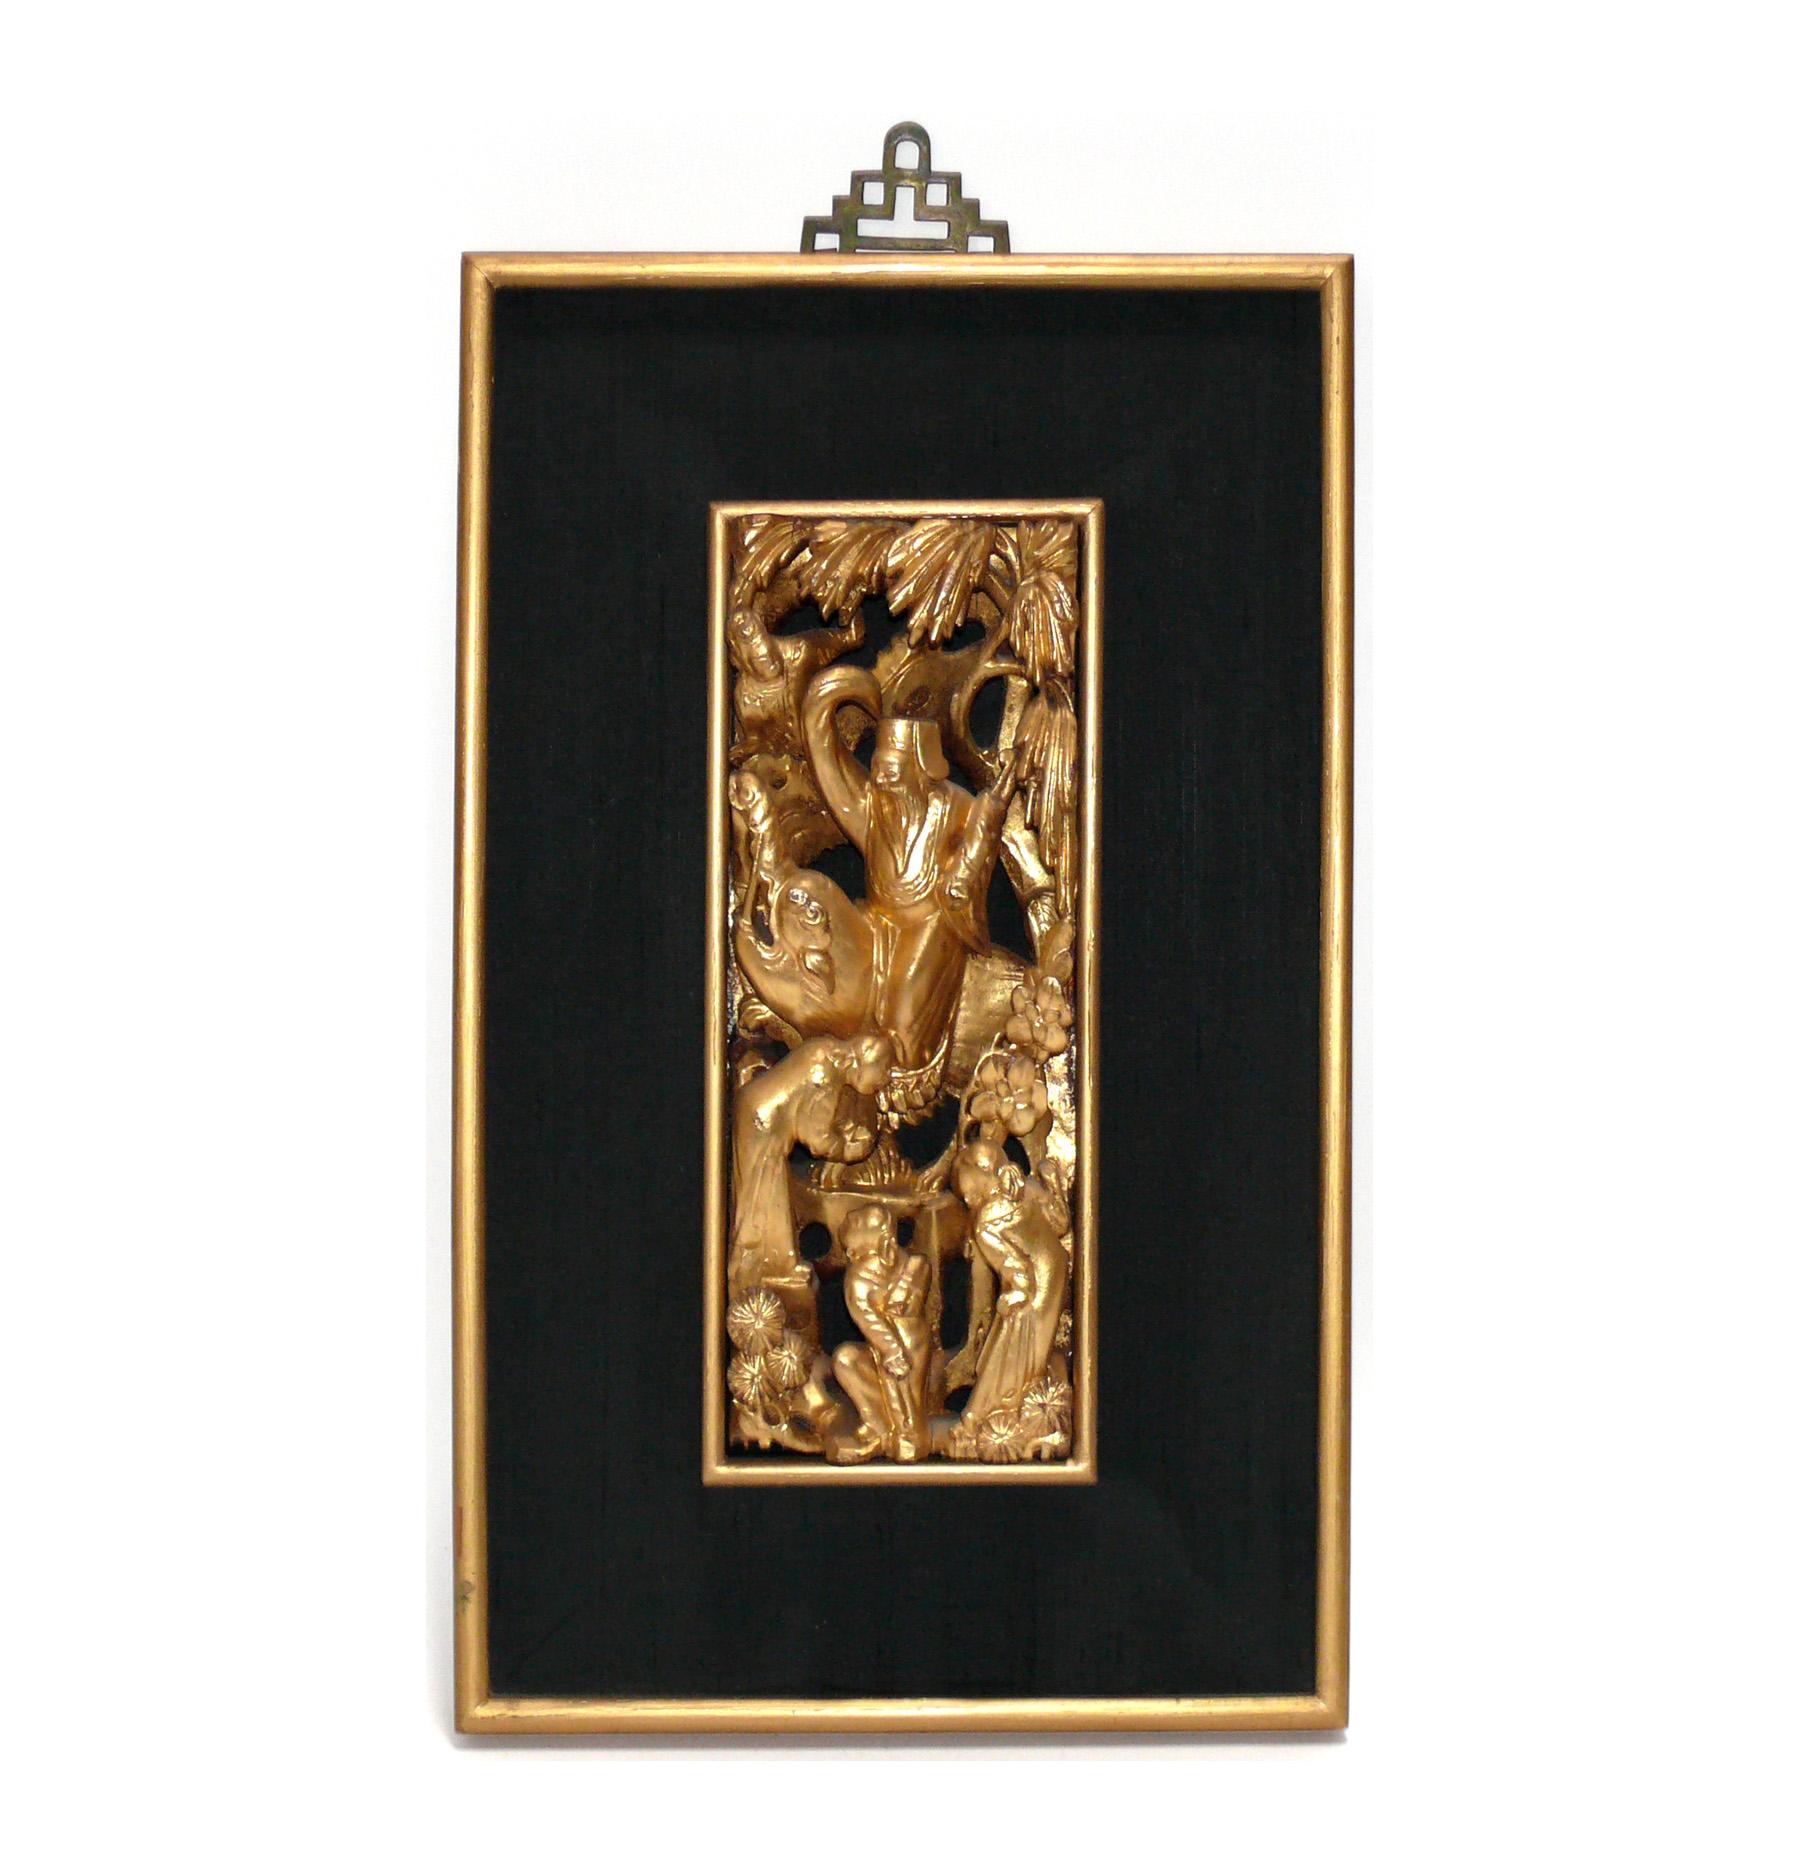 Groupe de cinq plaques asiatiques en bois doré sculpté à la main, probablement encadrées dans les années 1950, les sculptures peuvent être beaucoup plus anciennes. Magnifiquement encadré dans des cadres dorés avec des bordures en soie brute noire.